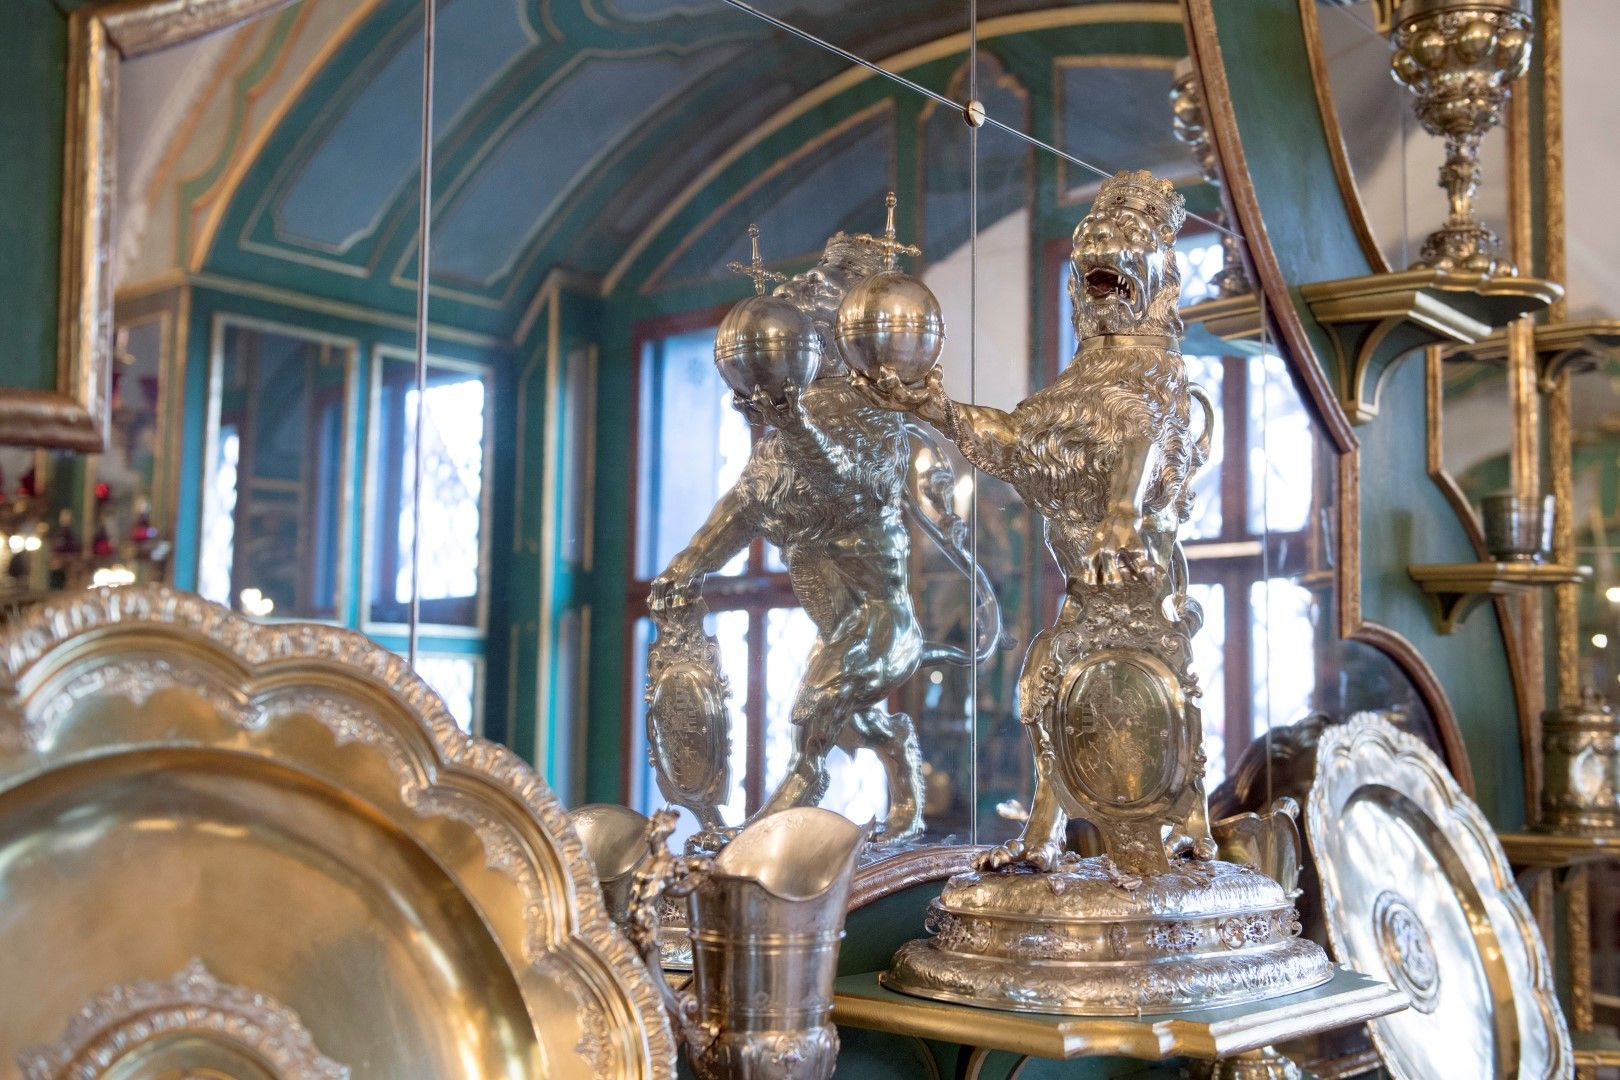 Сребърни съкровища в музея "Грюнес Гевьолбе" (Grünes Gewölbe) в Дрезден